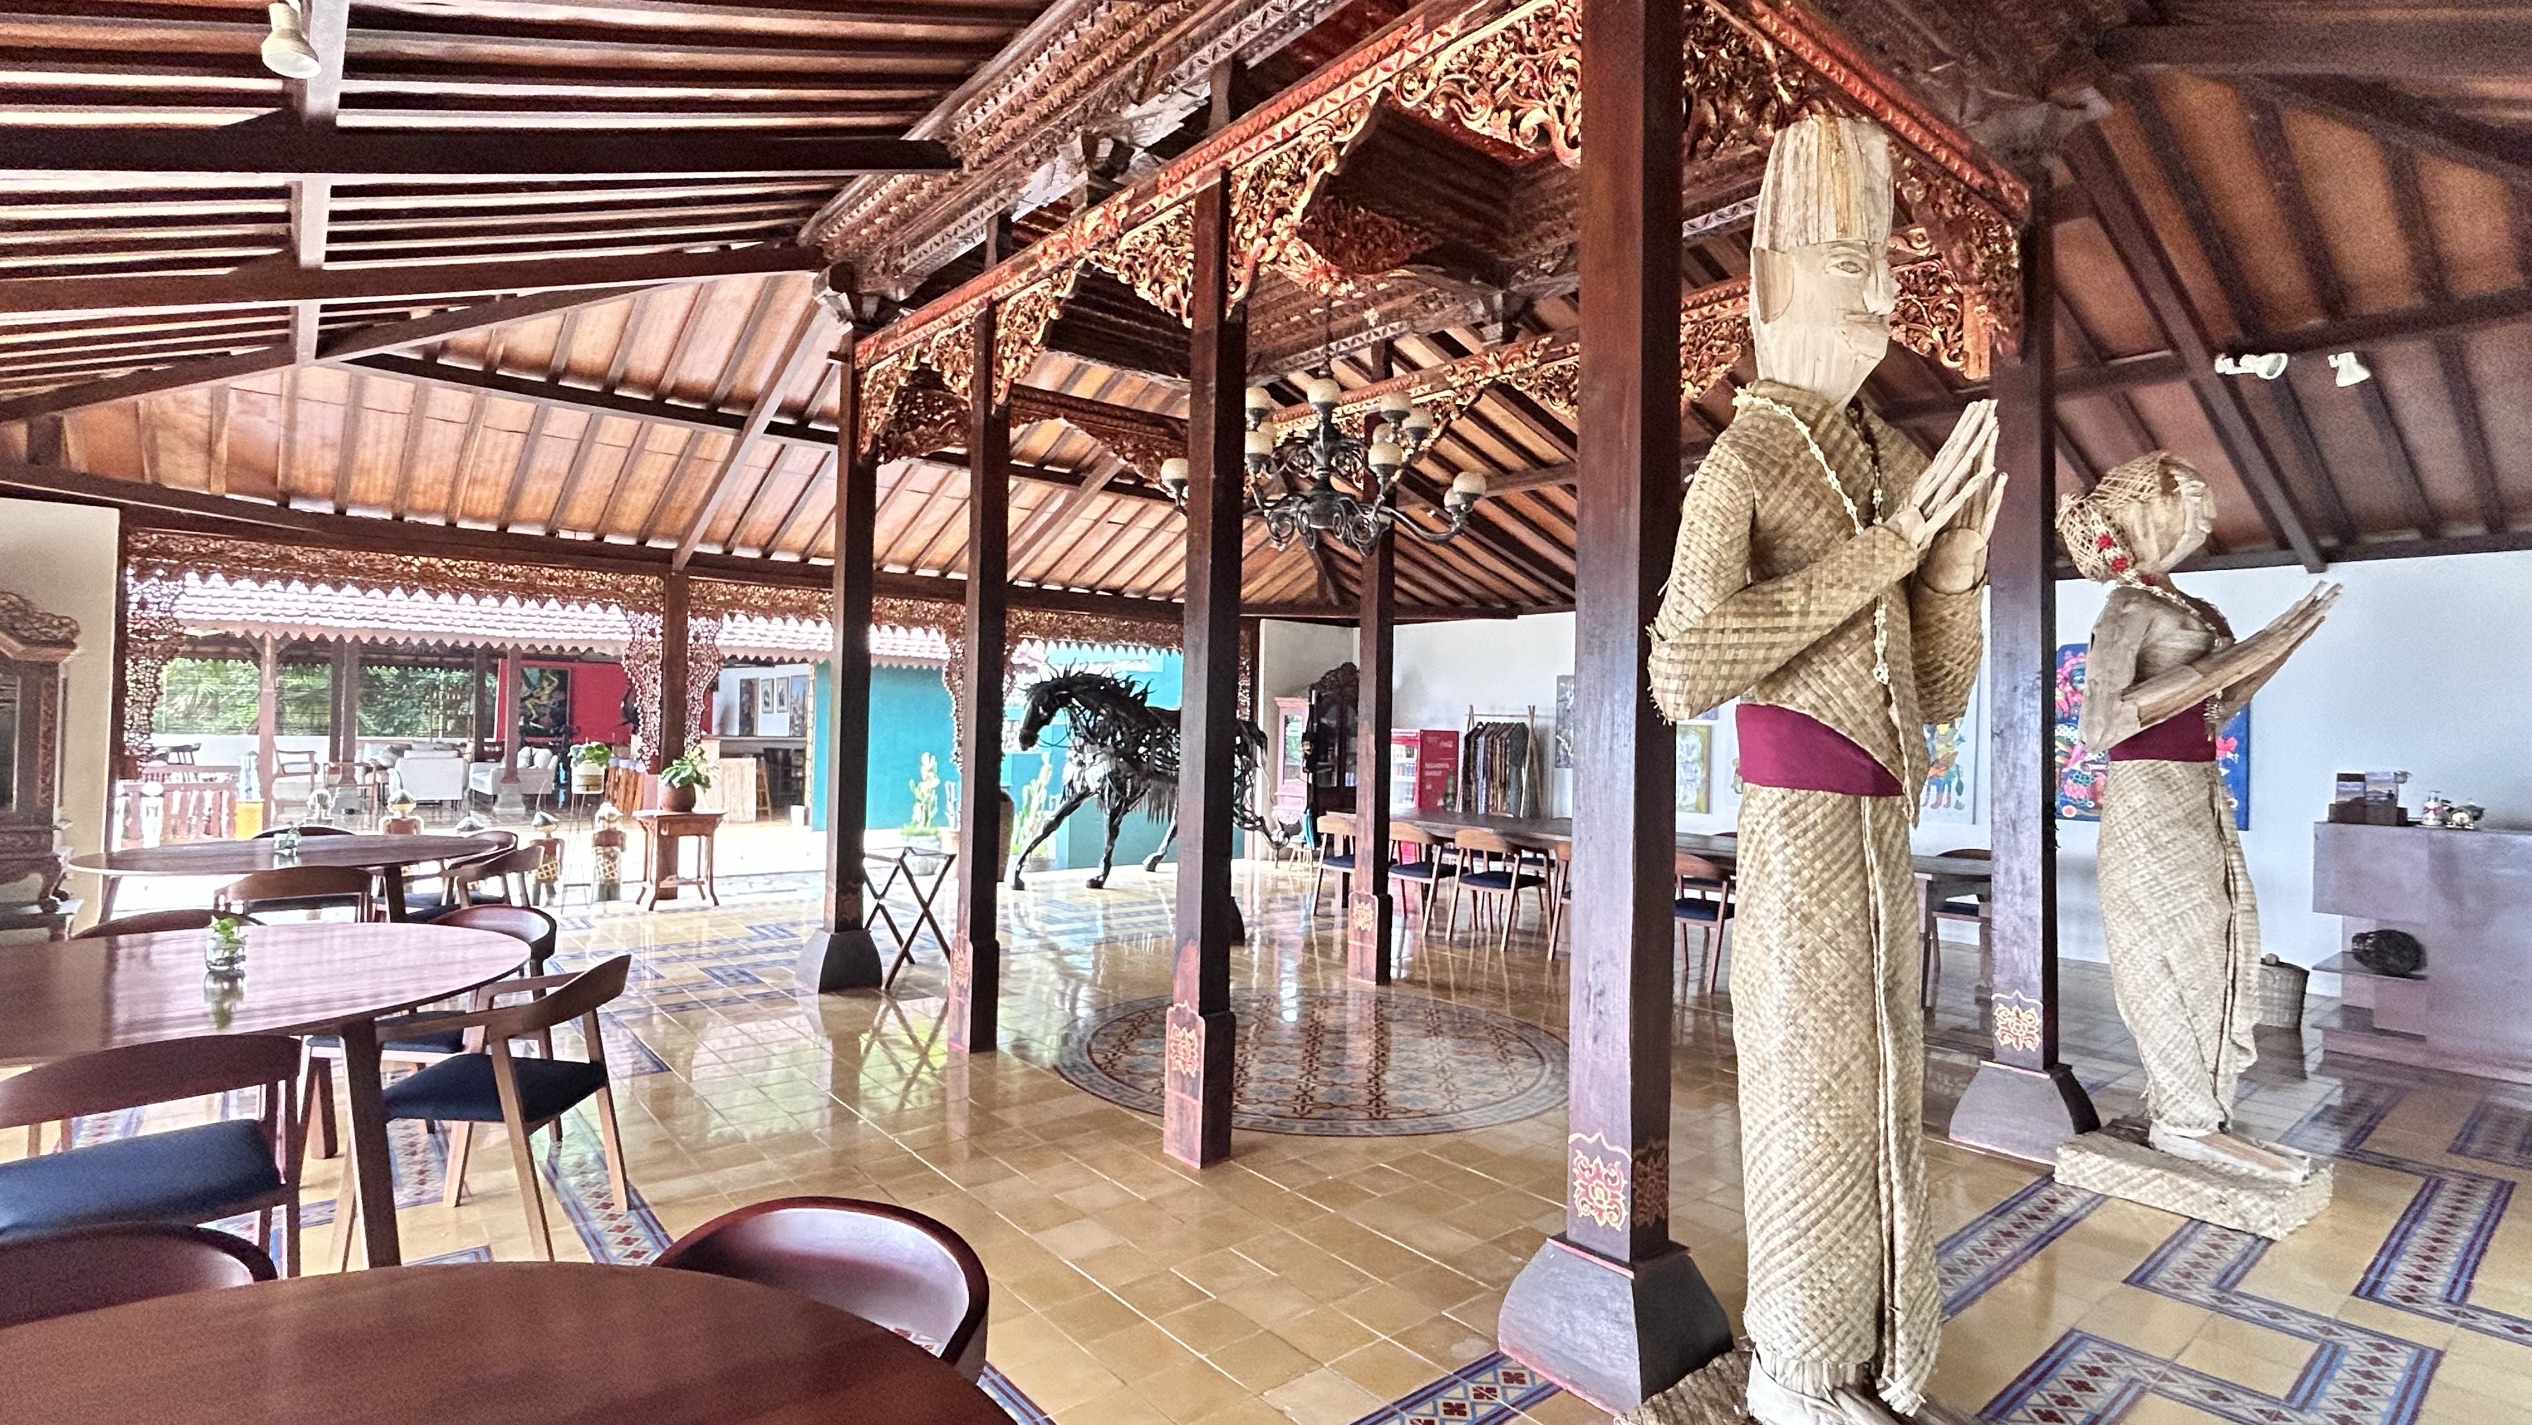 酒店在山上，房间可以俯瞰村庄远眺婆罗浮屠。每天清晨被鸟鸣声叫醒，酒店里传统的印尼音乐如泉水叮咚，下午